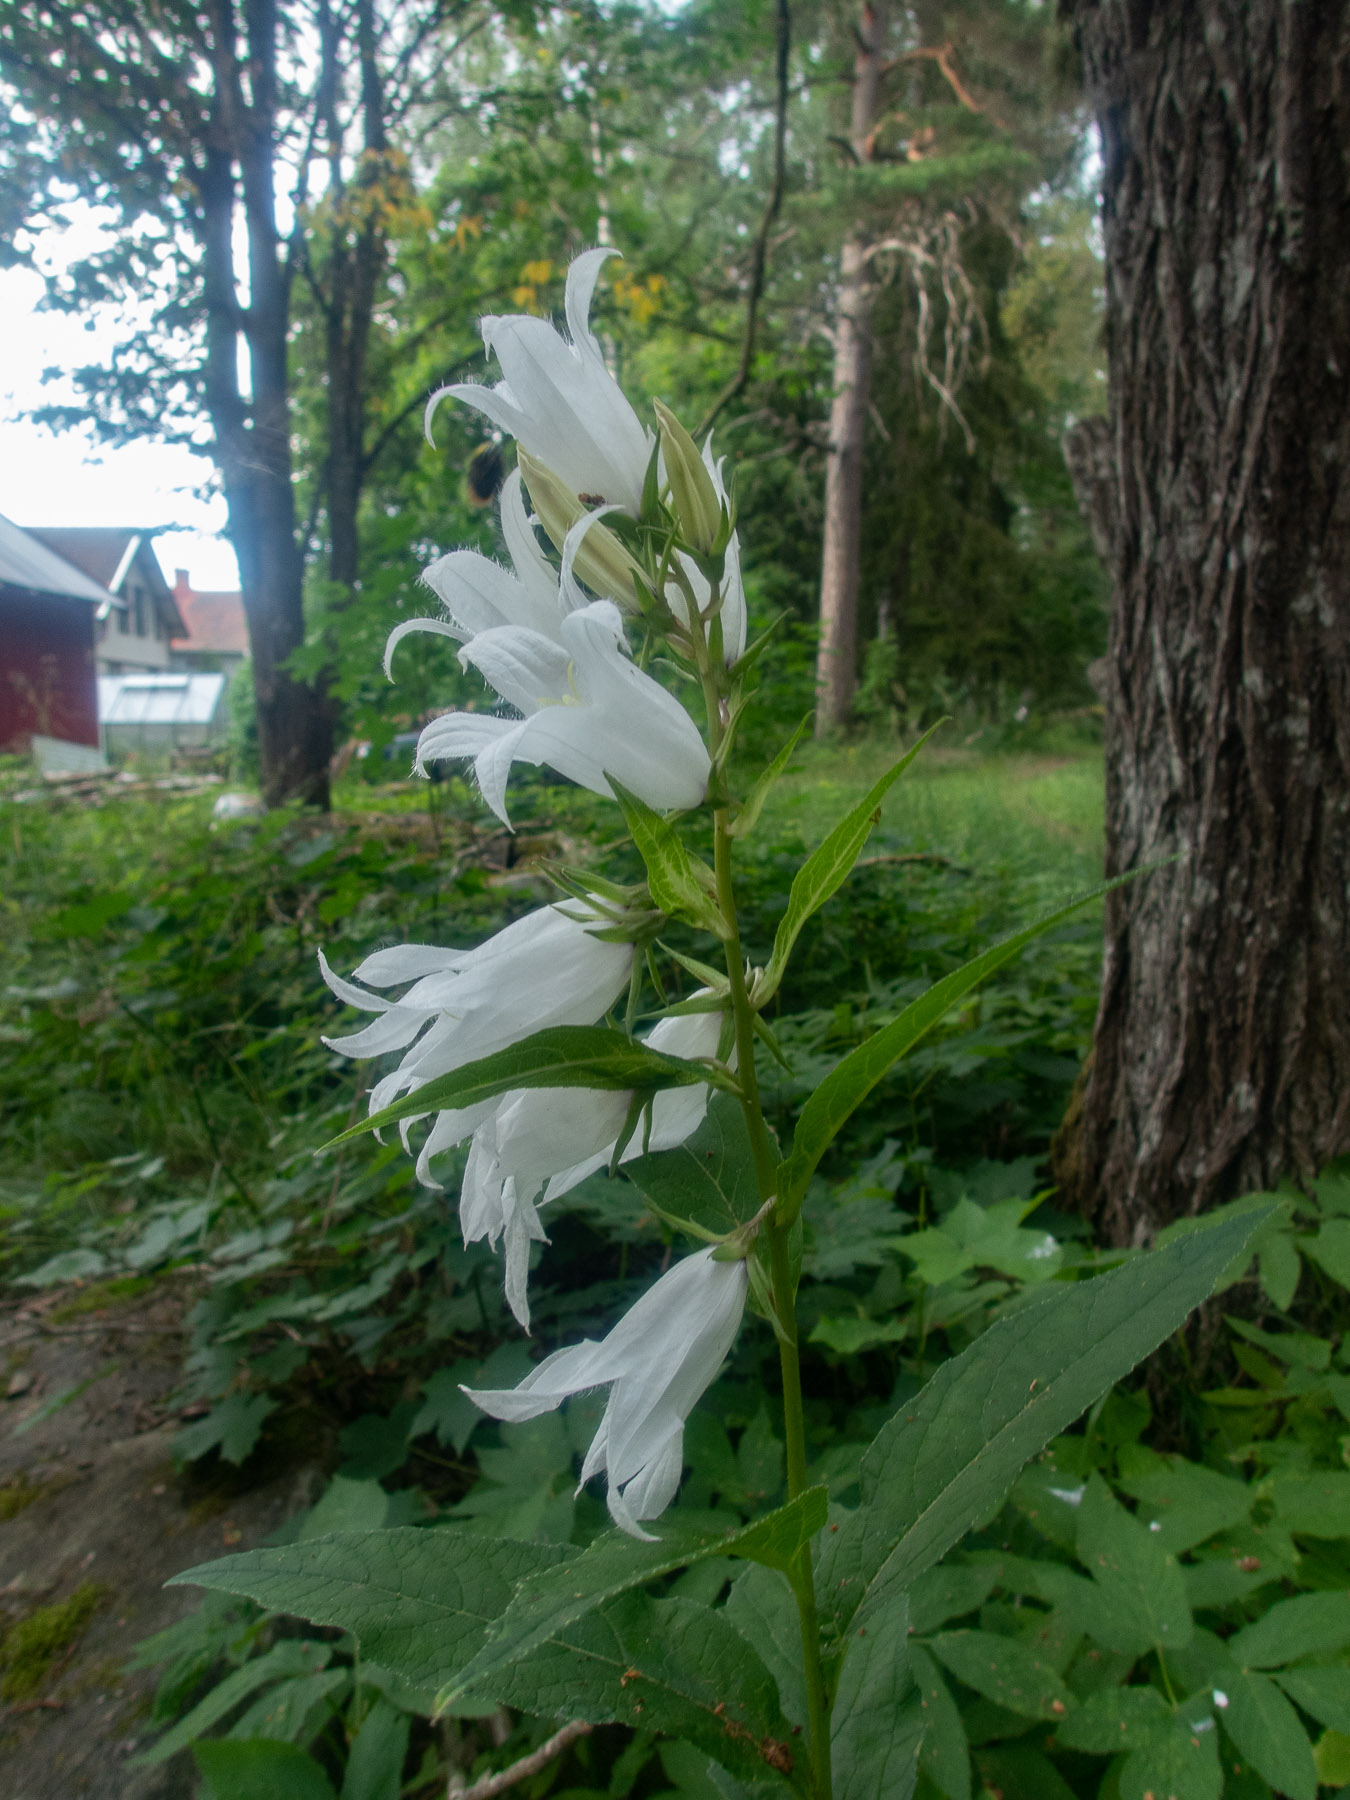 Колокольчик широколистный (Campanula latifolia)Белая форма.
Национальный парк F?rnebofj?rden, Швеция, июль 2021. Автор фото: Сутормина Марина